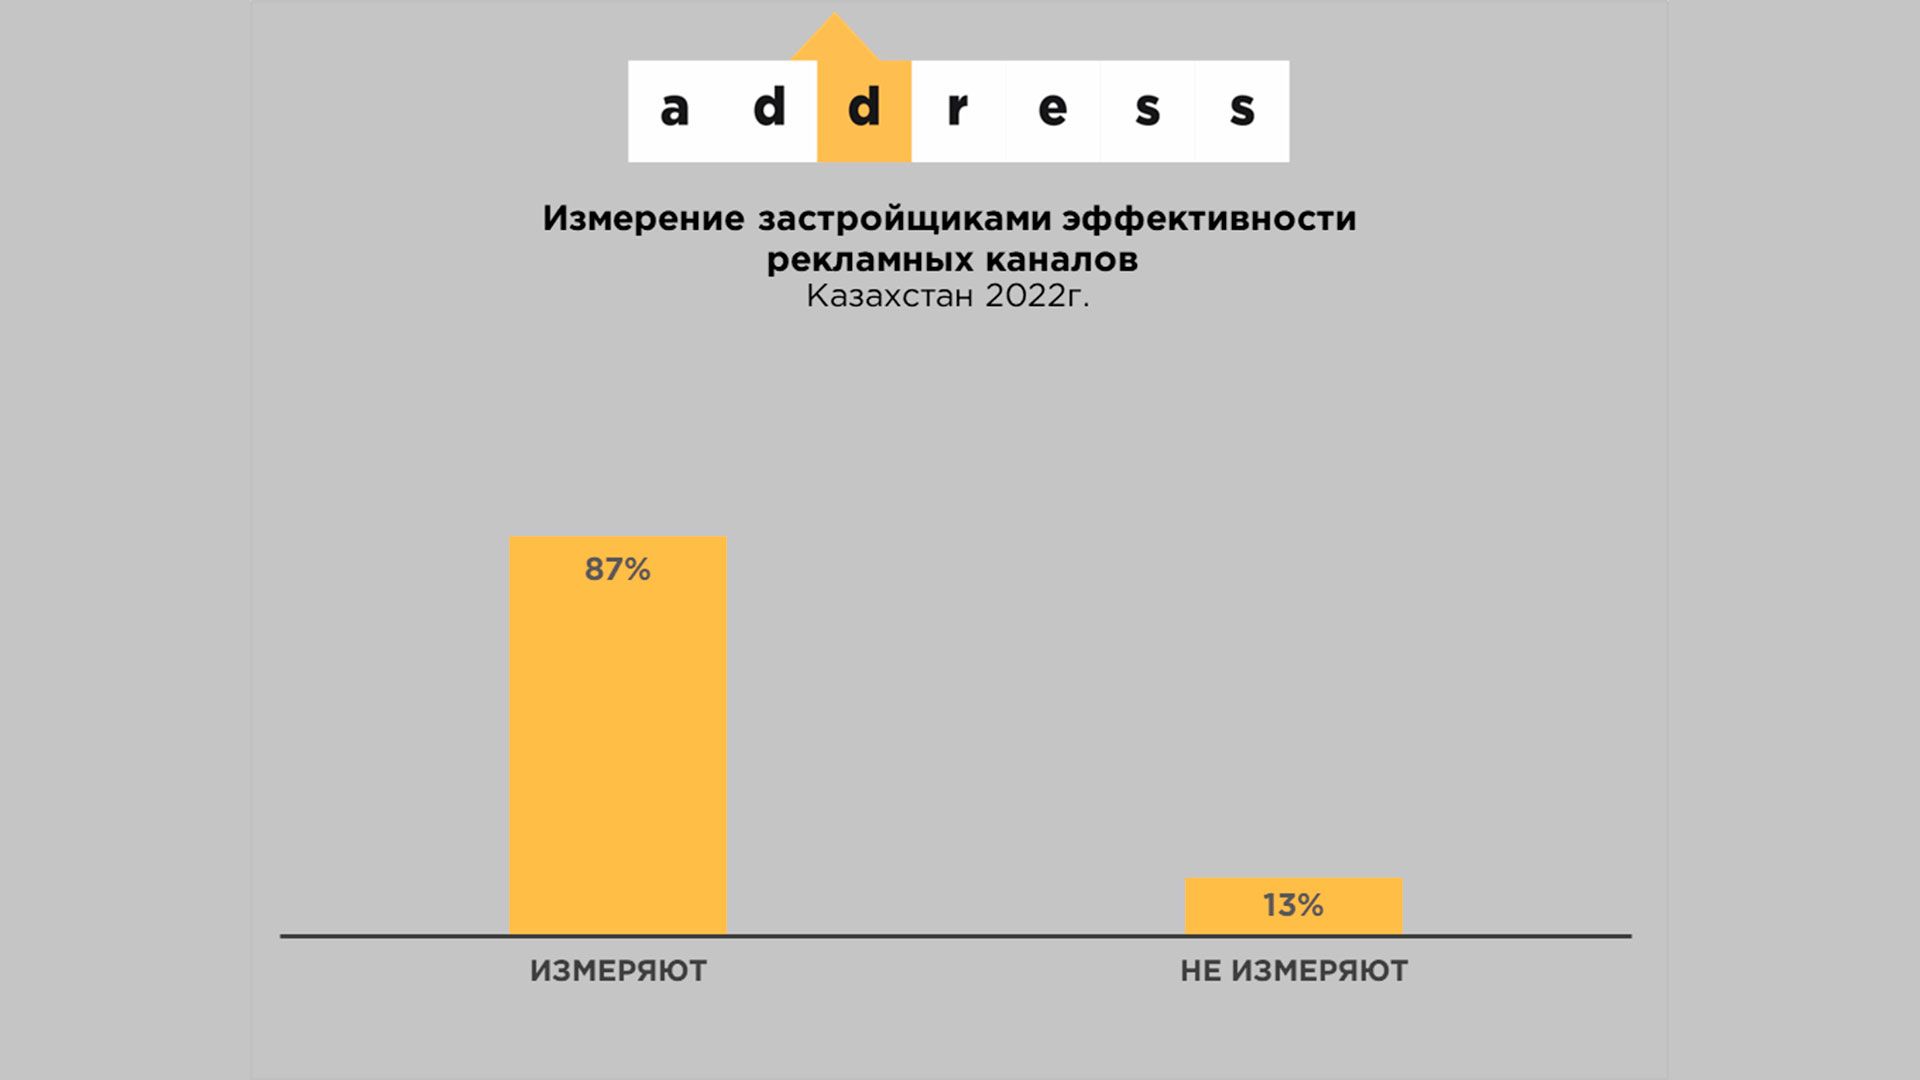  График №1 "Измеряют ли застройщики Казахстана эффективность рекламных каналов"